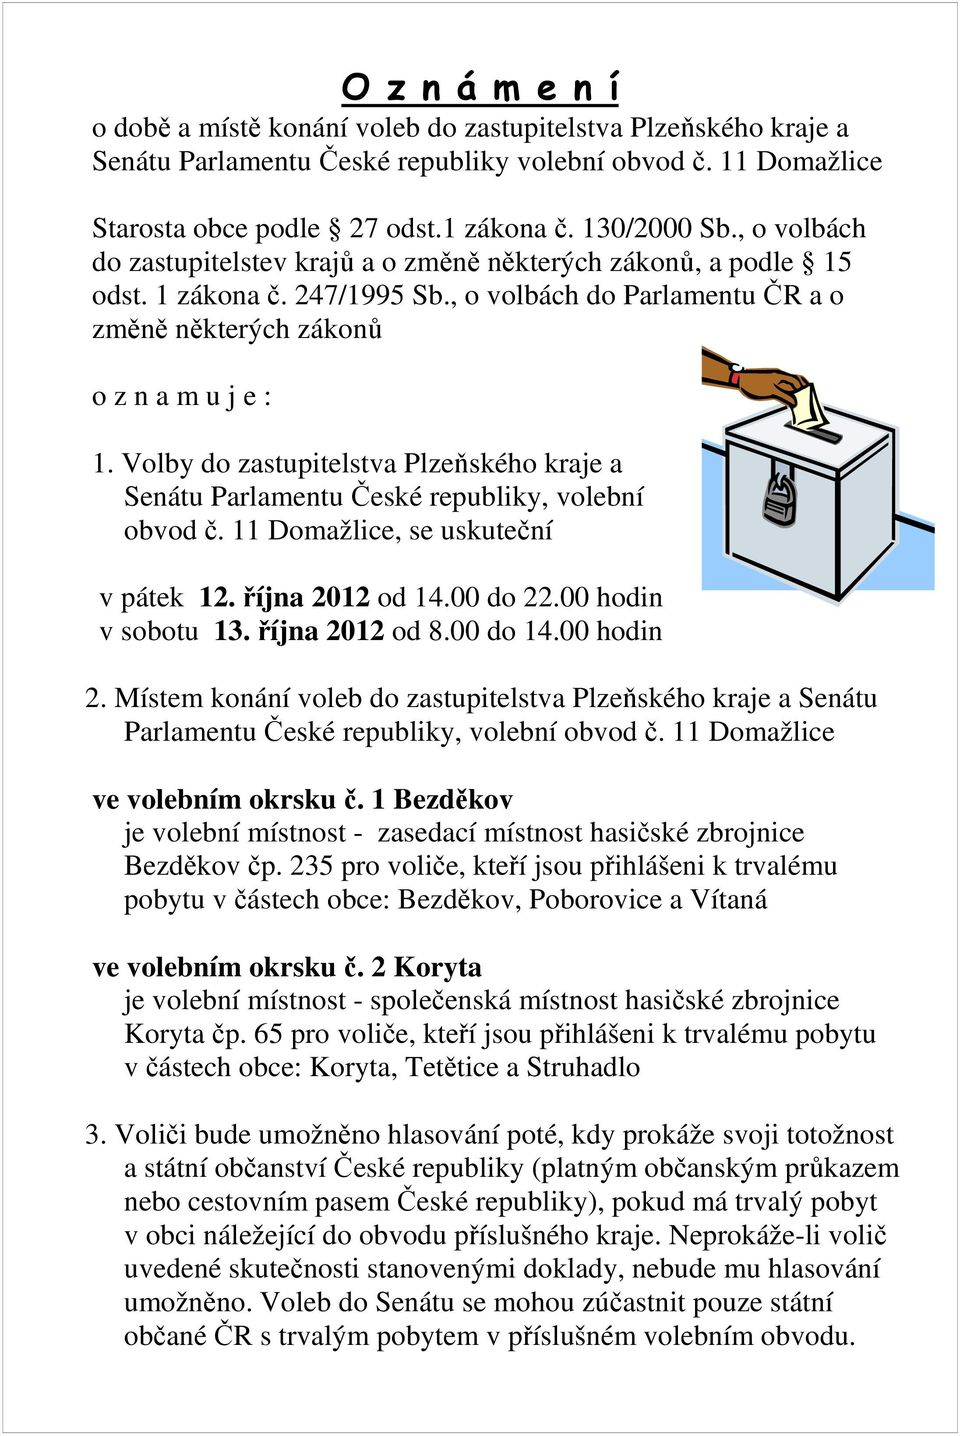 Volby do zastupitelstva Plzeňského kraje a Senátu Parlamentu České republiky, volební obvod č. 11 Domažlice, se uskuteční v pátek 12. října 2012 od 14.00 do 22.00 hodin v sobotu 13. října 2012 od 8.